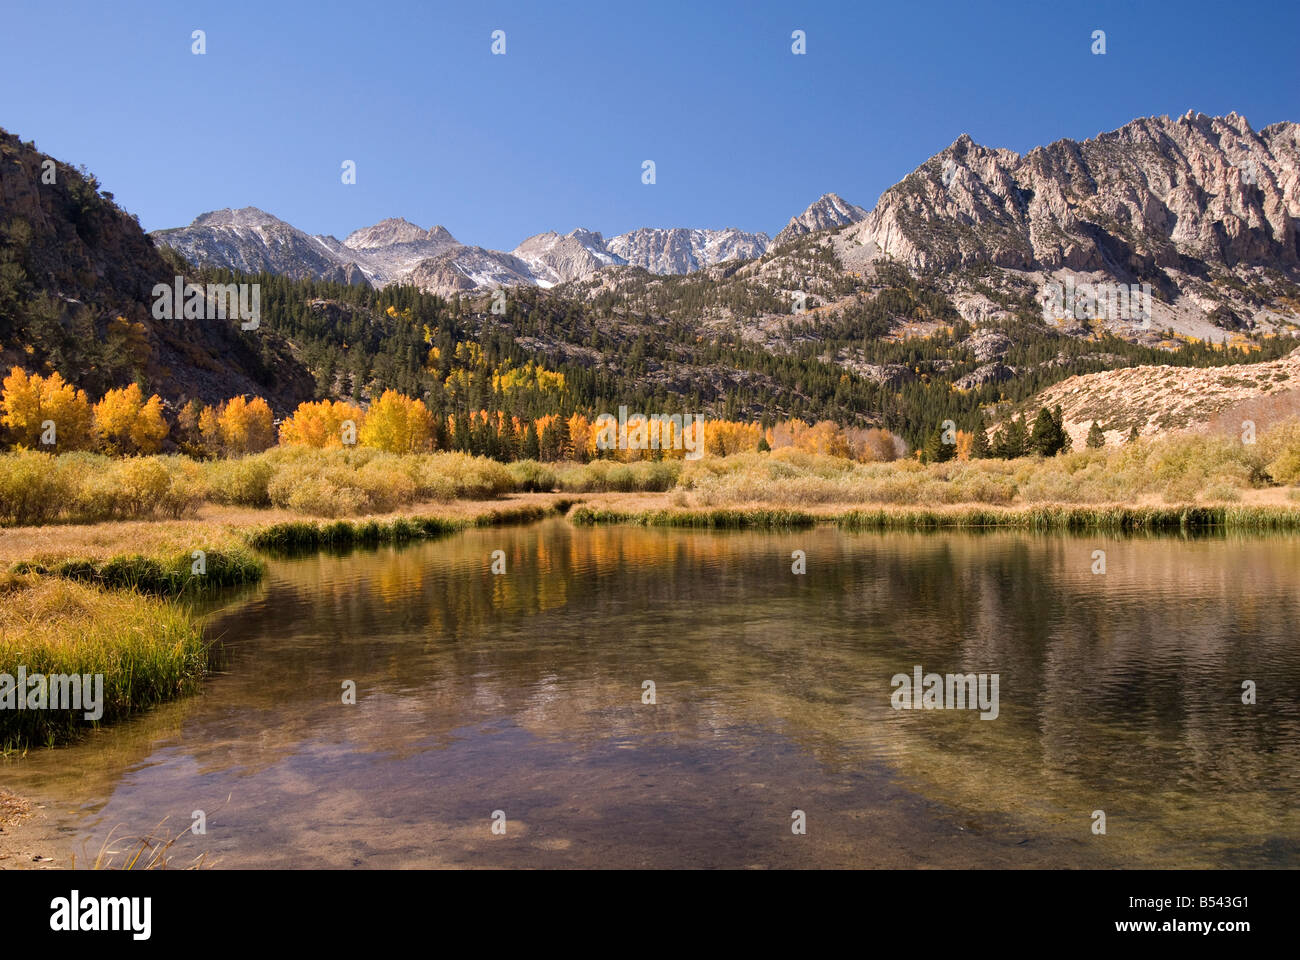 La couleur de l'automne dans la région de North Lake, évêque Creek, région Est de la Sierra, en Californie, aux États-Unis. Banque D'Images